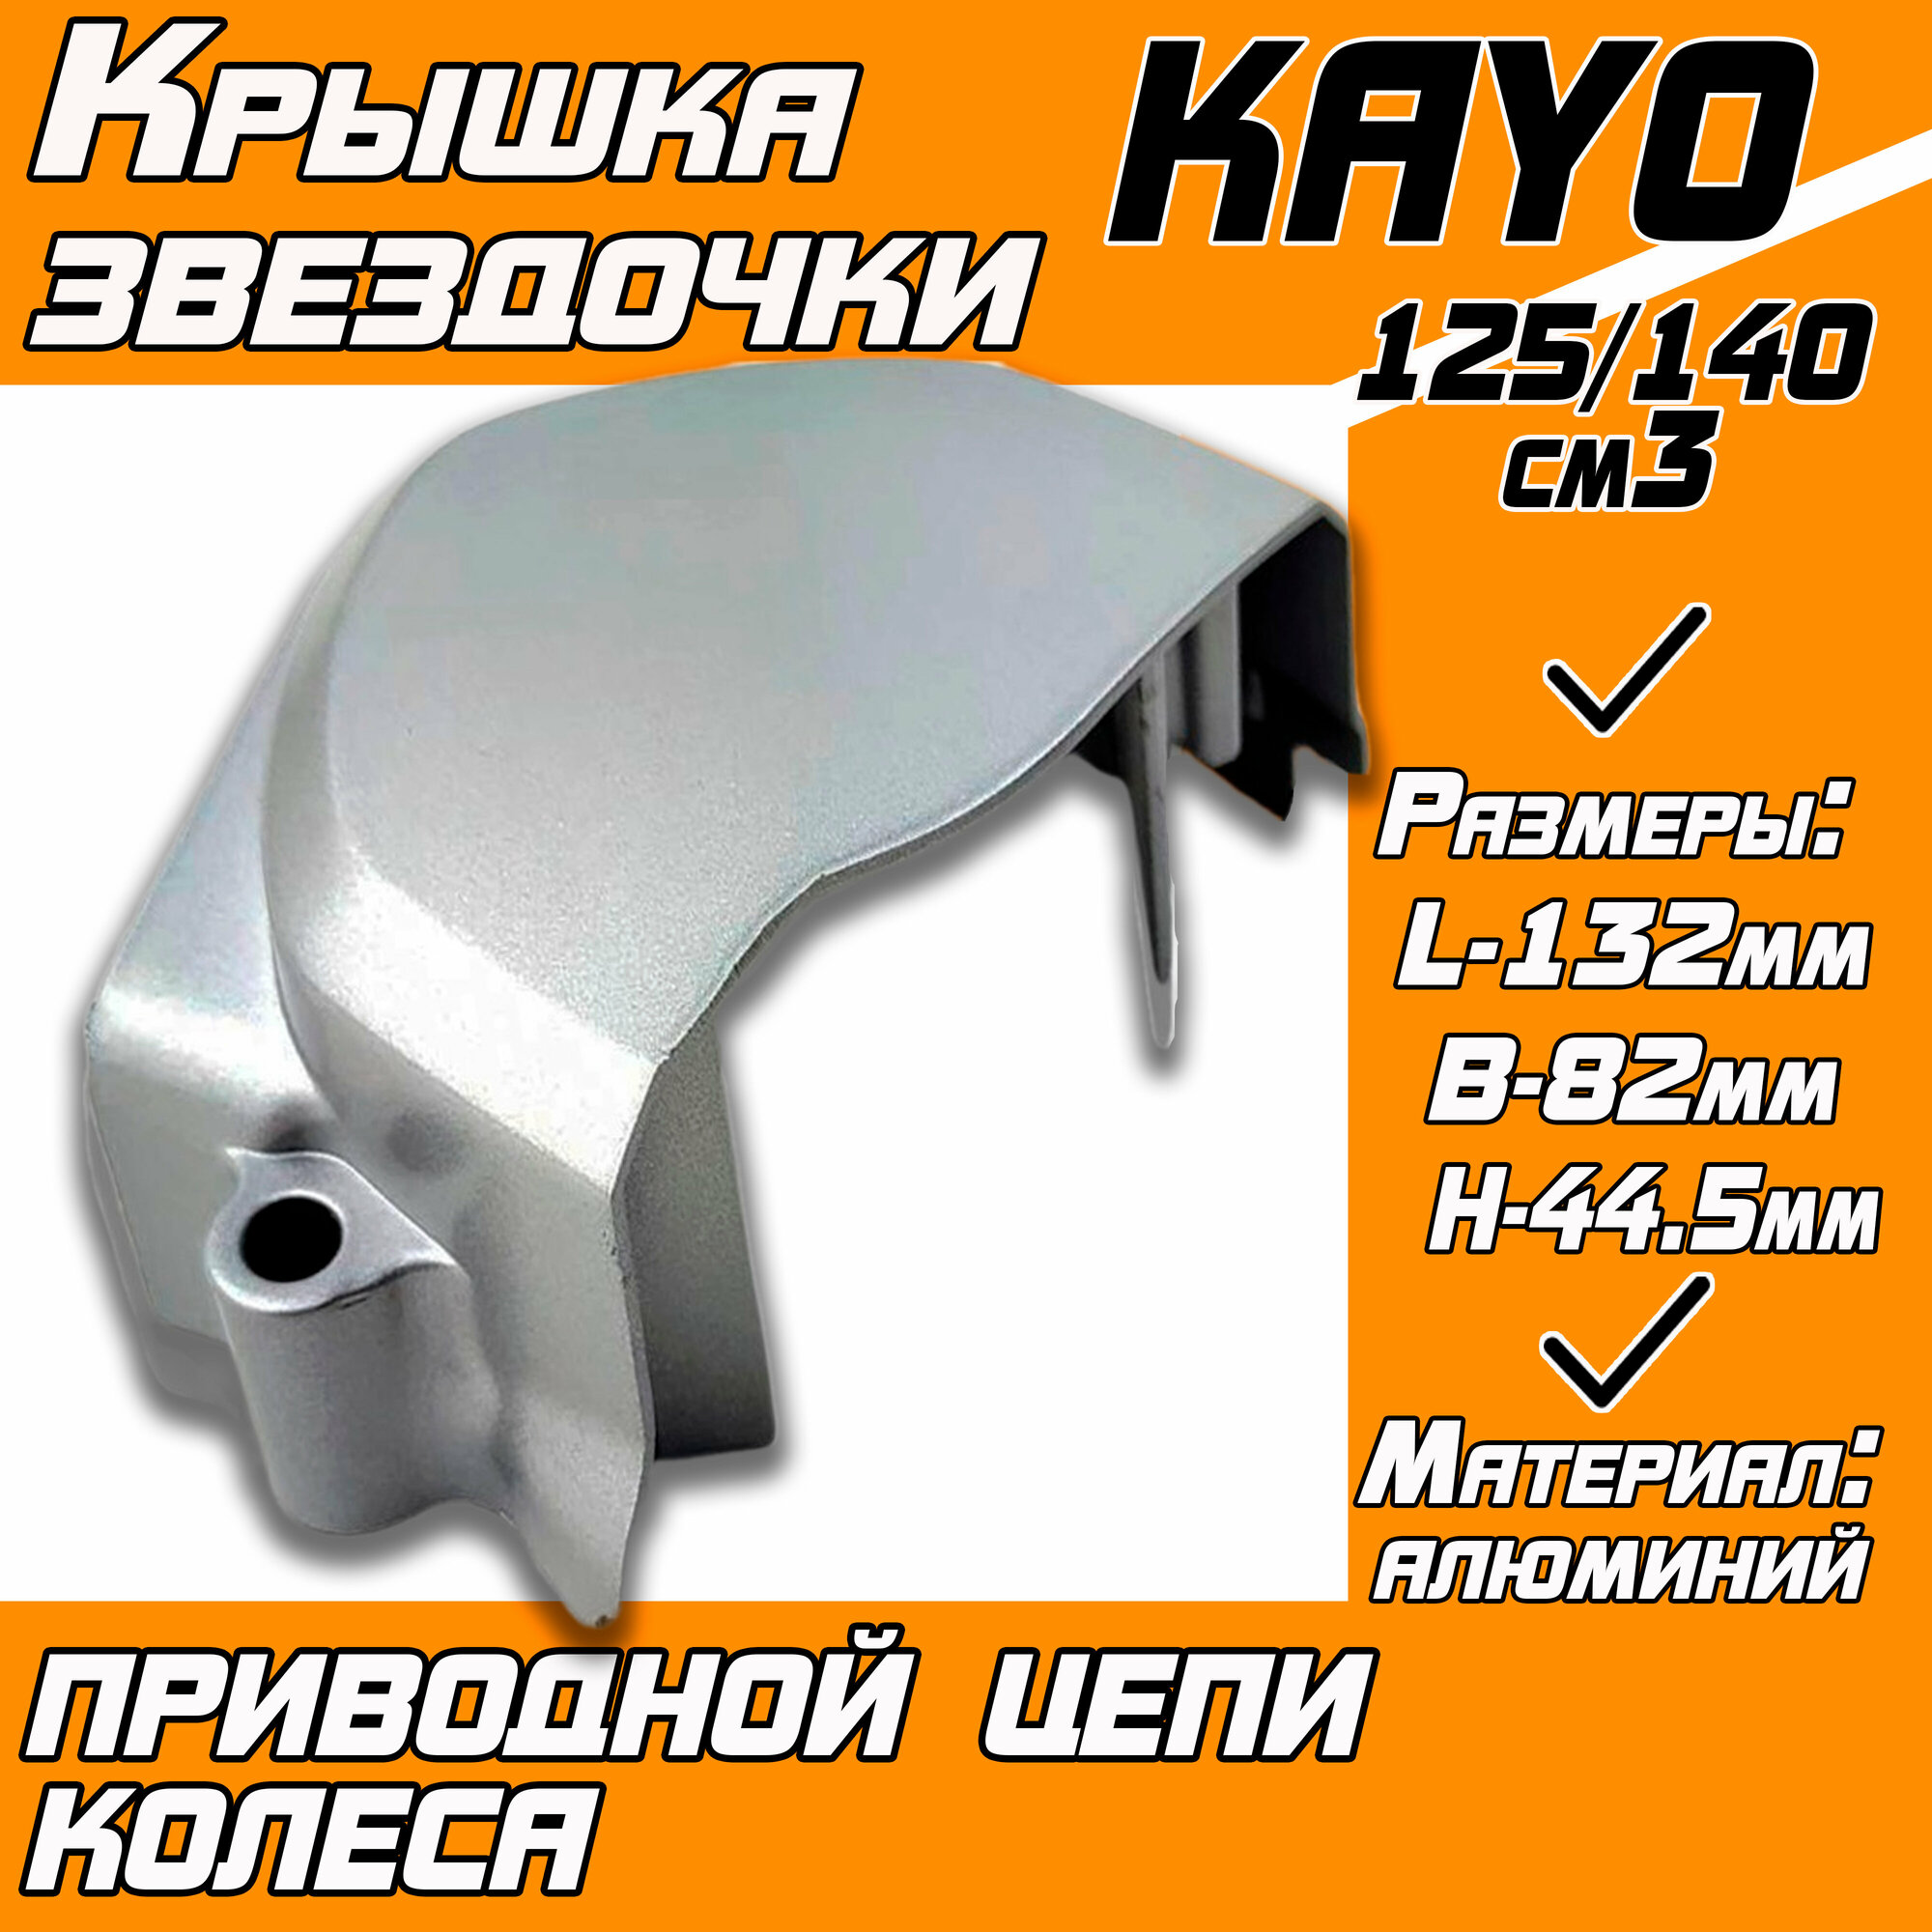 Крышка звездочки приводной цепи колеса для питбайка KAYO125/140 (серая)